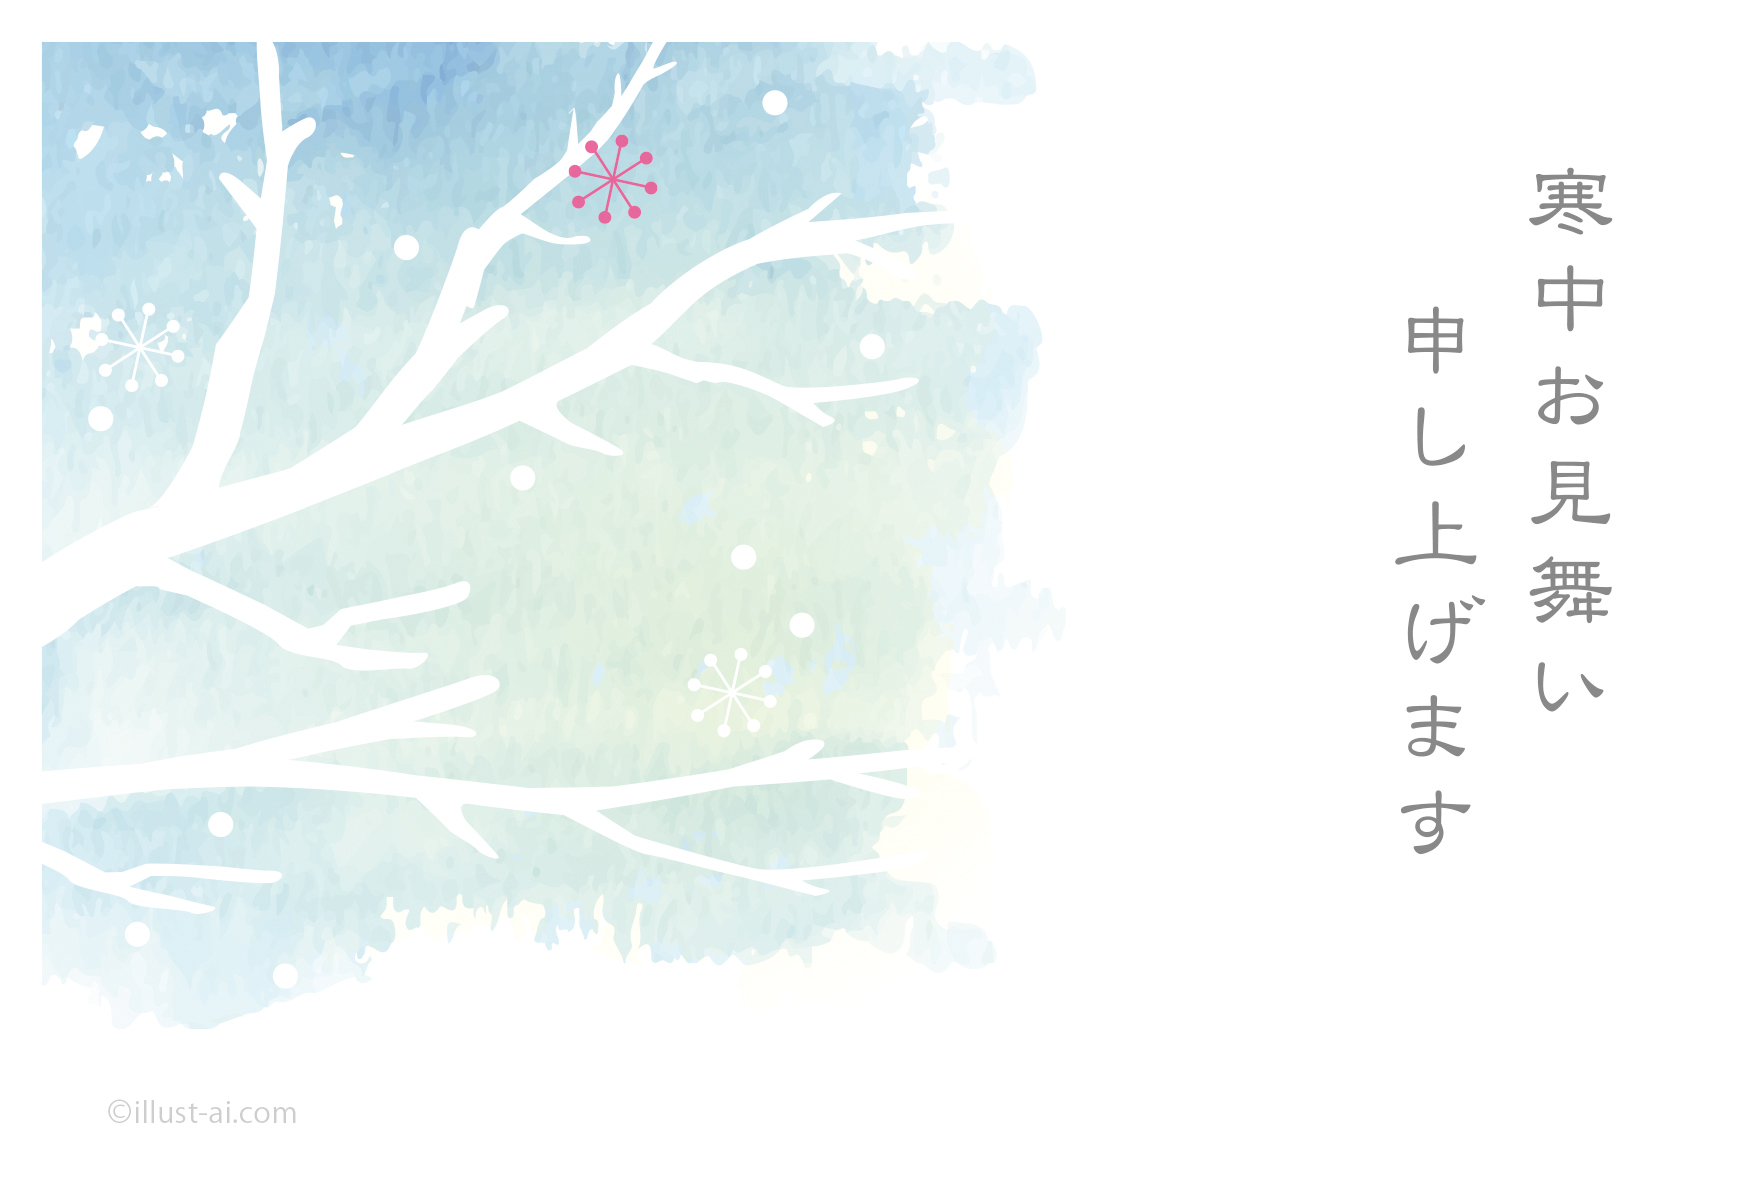 冬の冷えた空と木 寒中お見舞い19 ポストカード イラスト素材サイト イラストareira Postcard Template